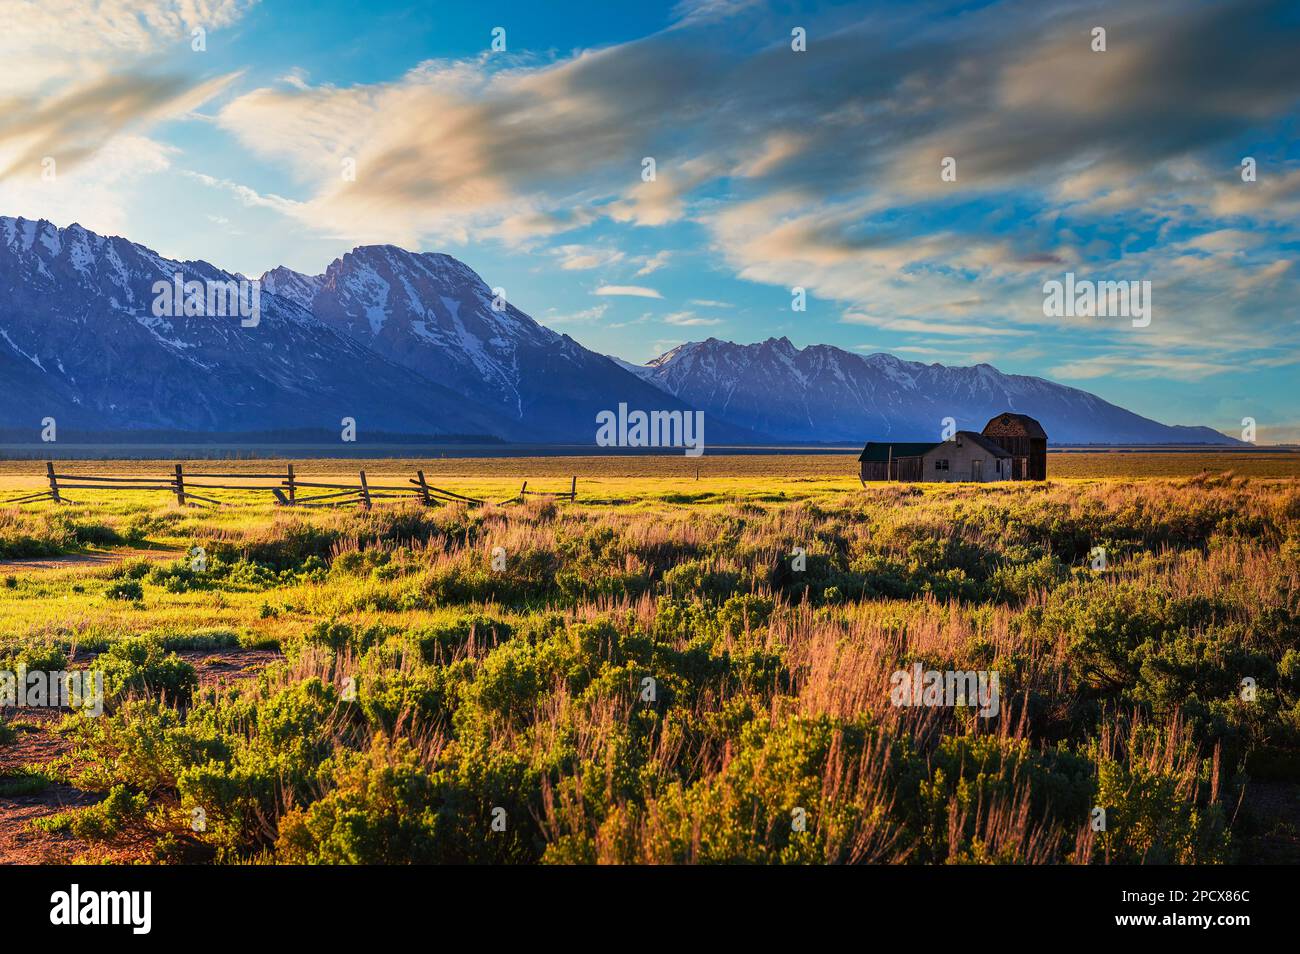 Coucher de soleil sur une ferme historique à Mormon Row dans le parc national de Grand Teton, Wyoming Banque D'Images